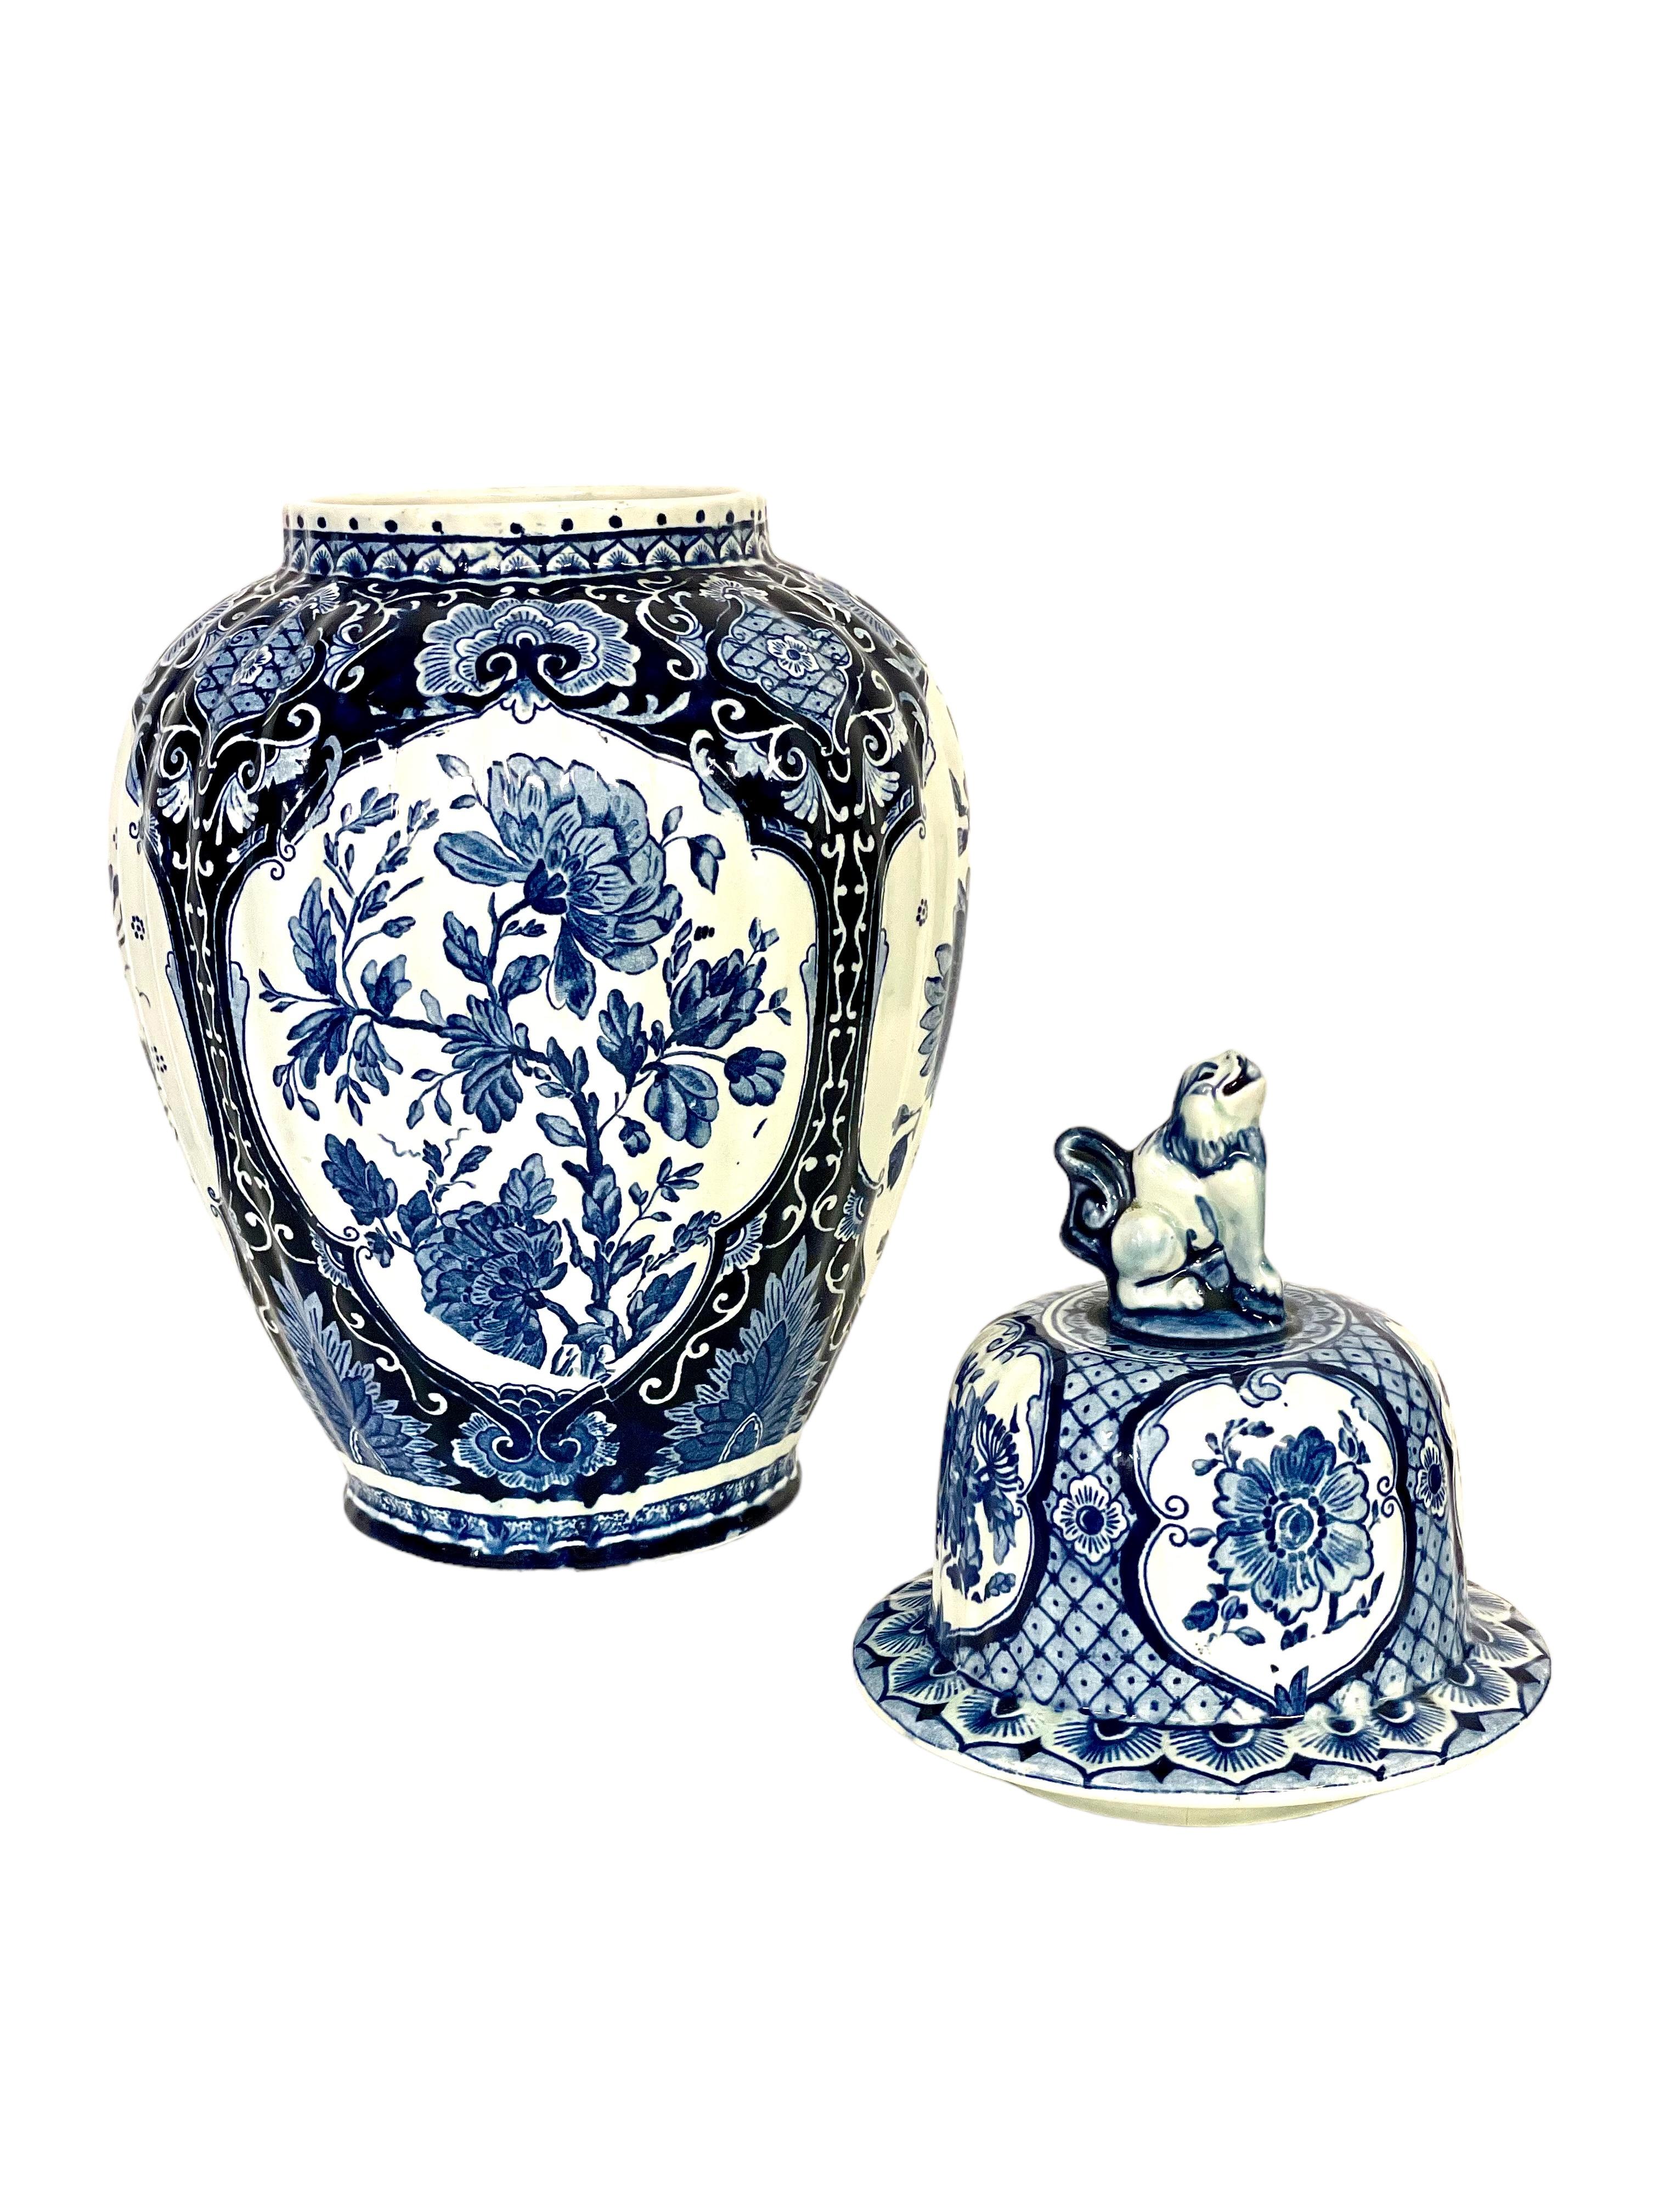 Eine große und hübsche Balustervase mit Deckel aus Delft, in der traditionellen blau-weißen Farbgebung dieses niederländischen Keramikherstellers. Die Vase stammt aus der zweiten Hälfte des 20. Jahrhunderts und trägt die Herstellermarke von Boch für